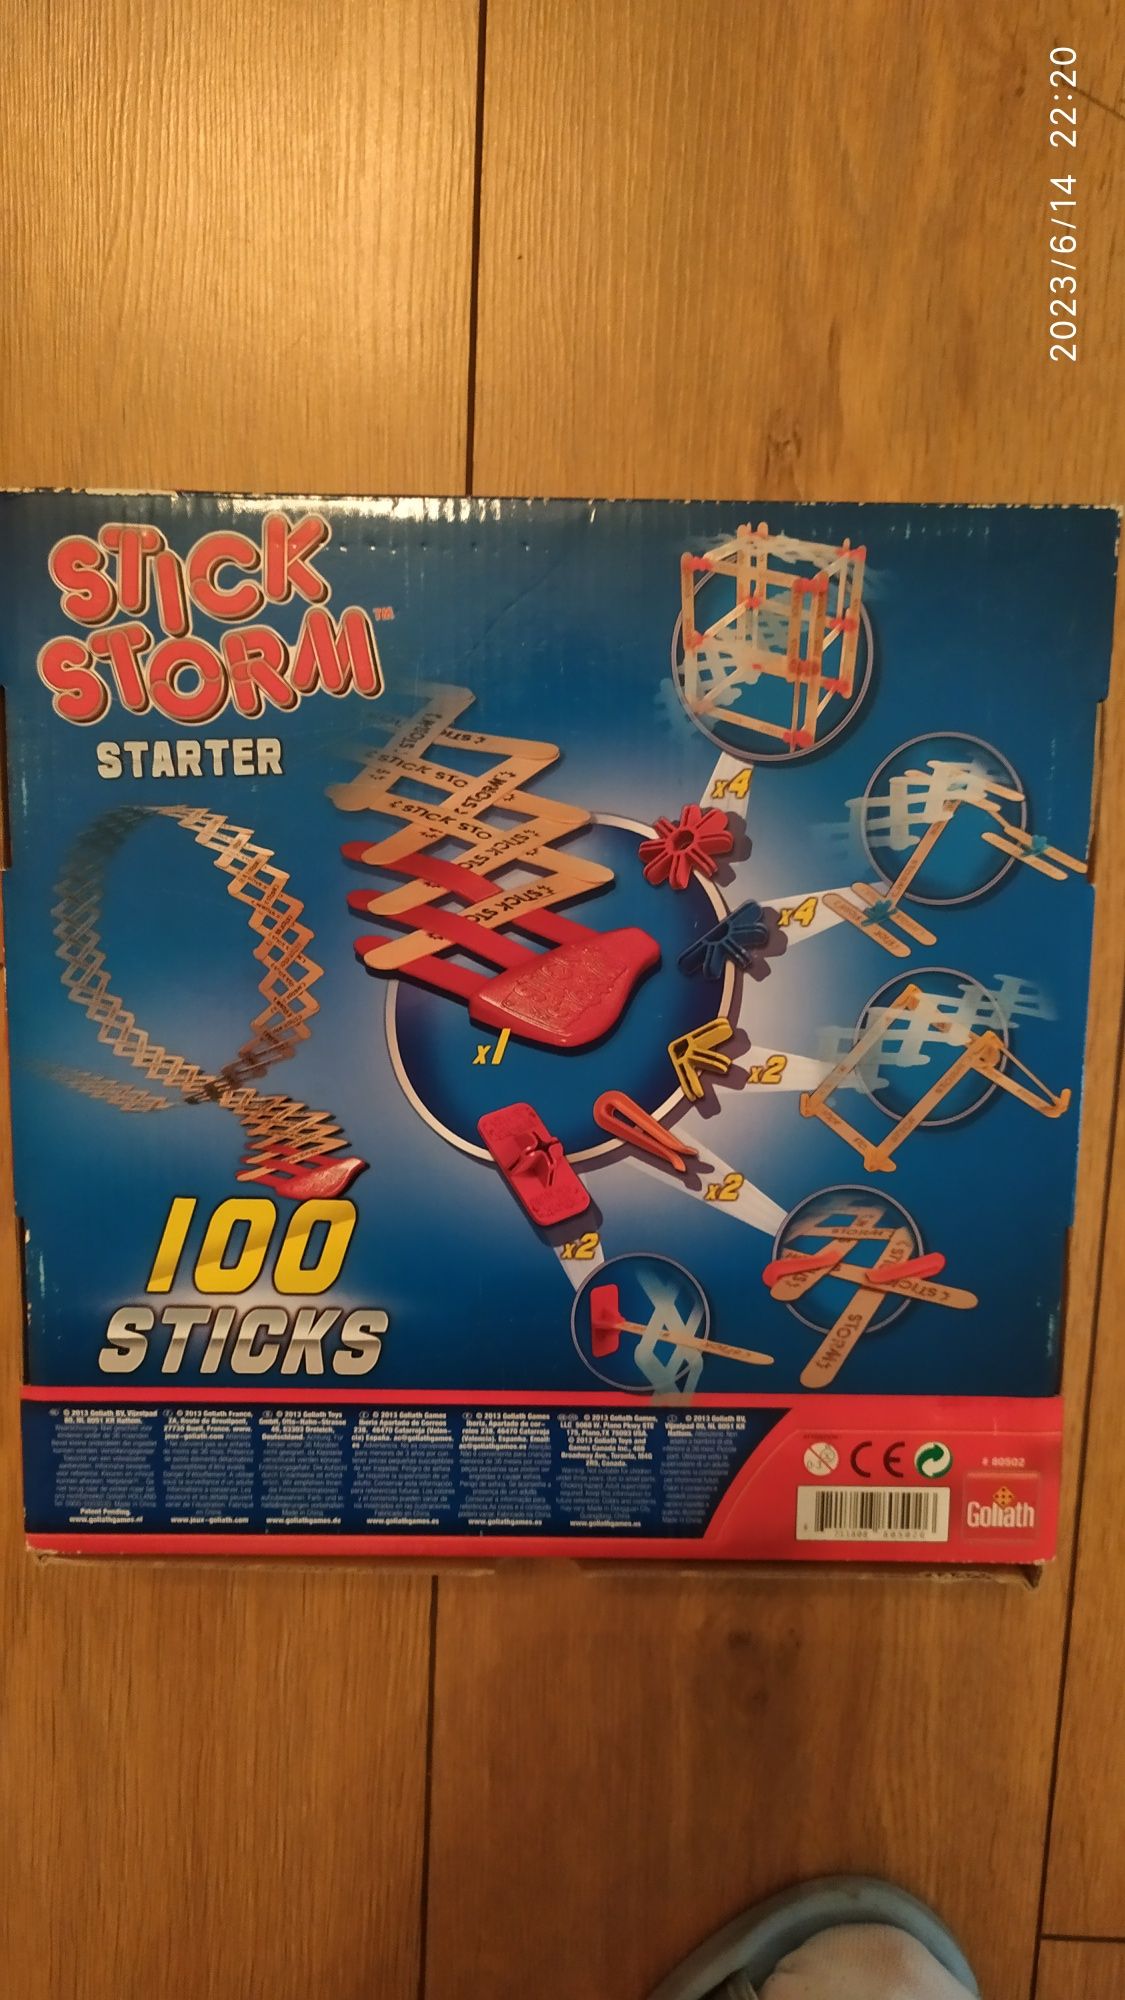 Stick Storm Starter gra zręcznościowa. Wiek 7+